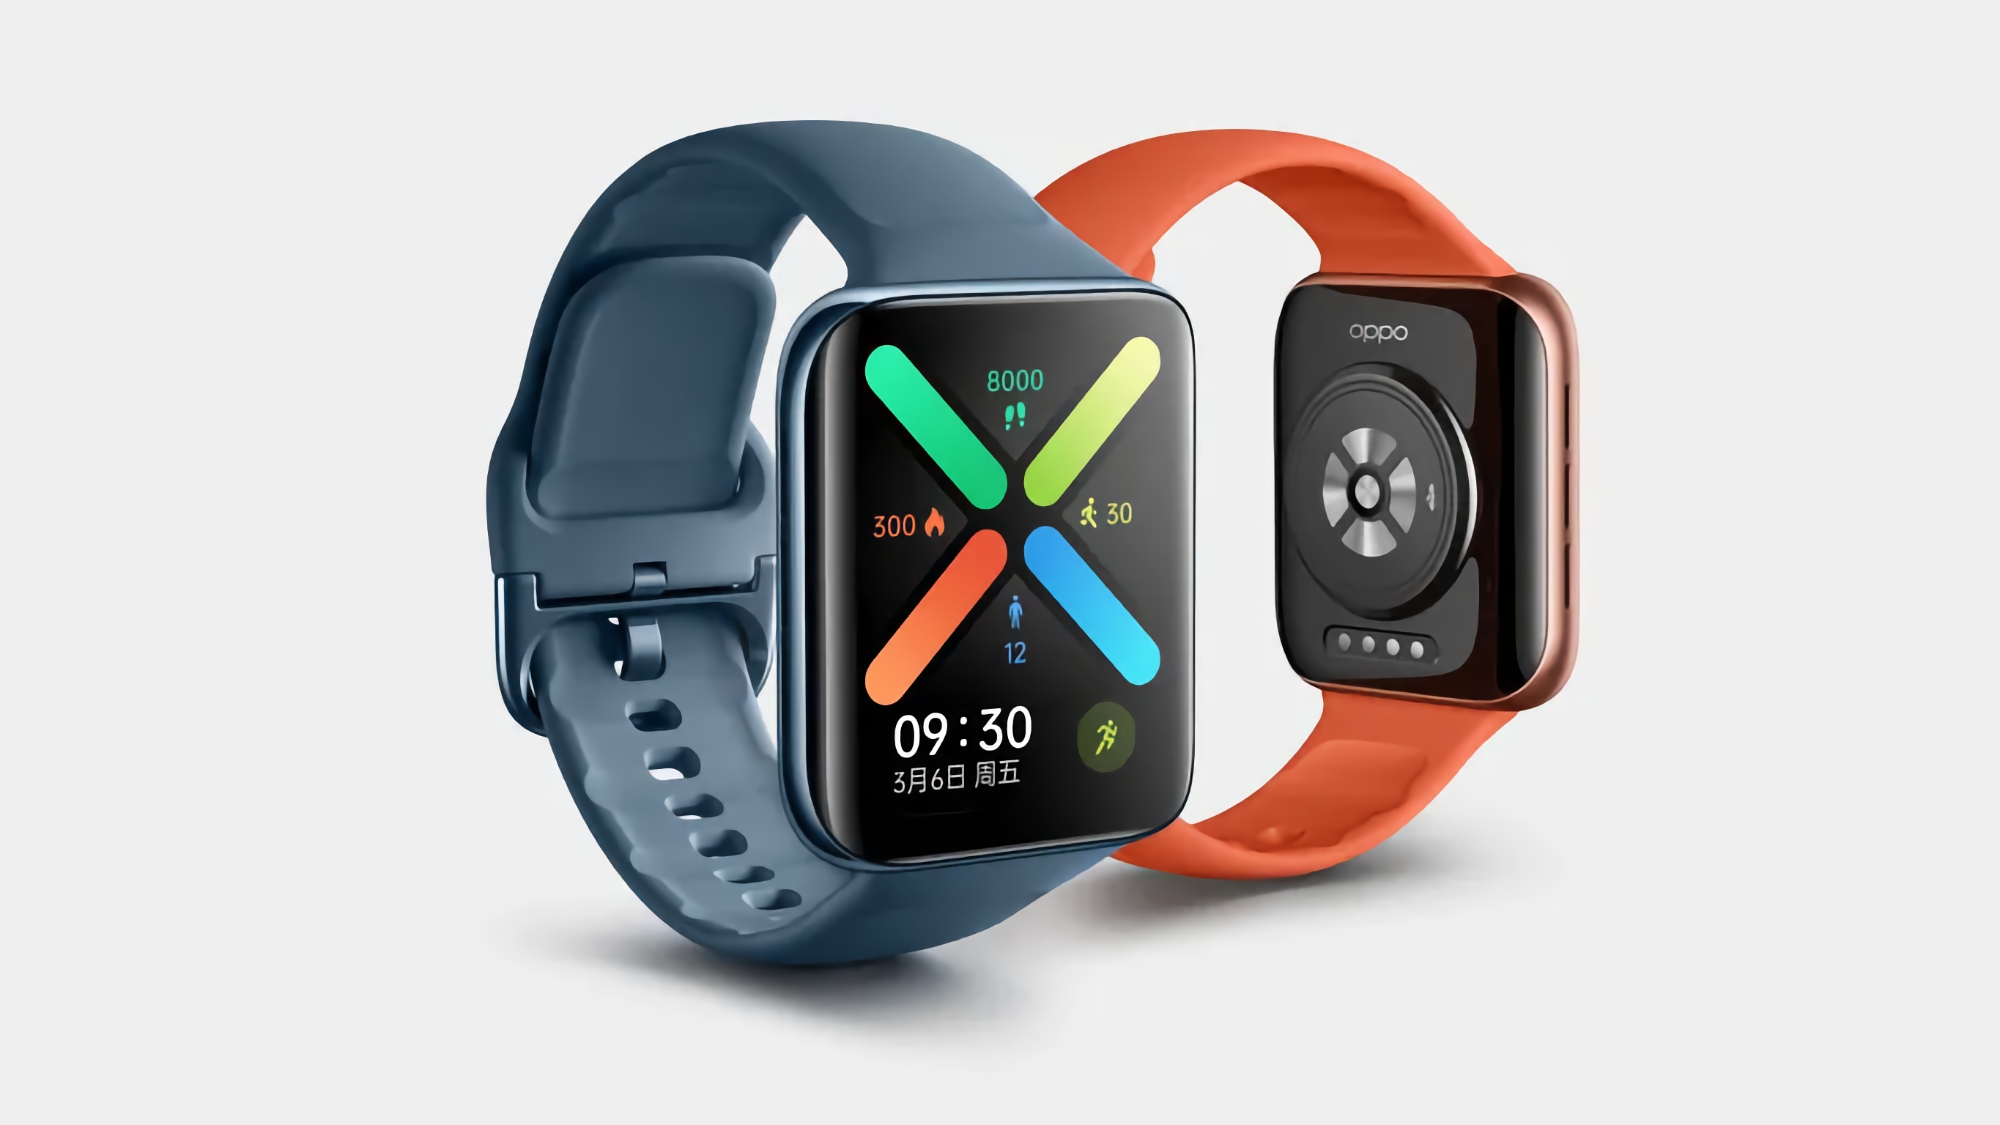 Lancement de l'OPPO Watch 3 en août : ce sera la première smartwatch équipée de la puce Snapdragon W5 Gen 1